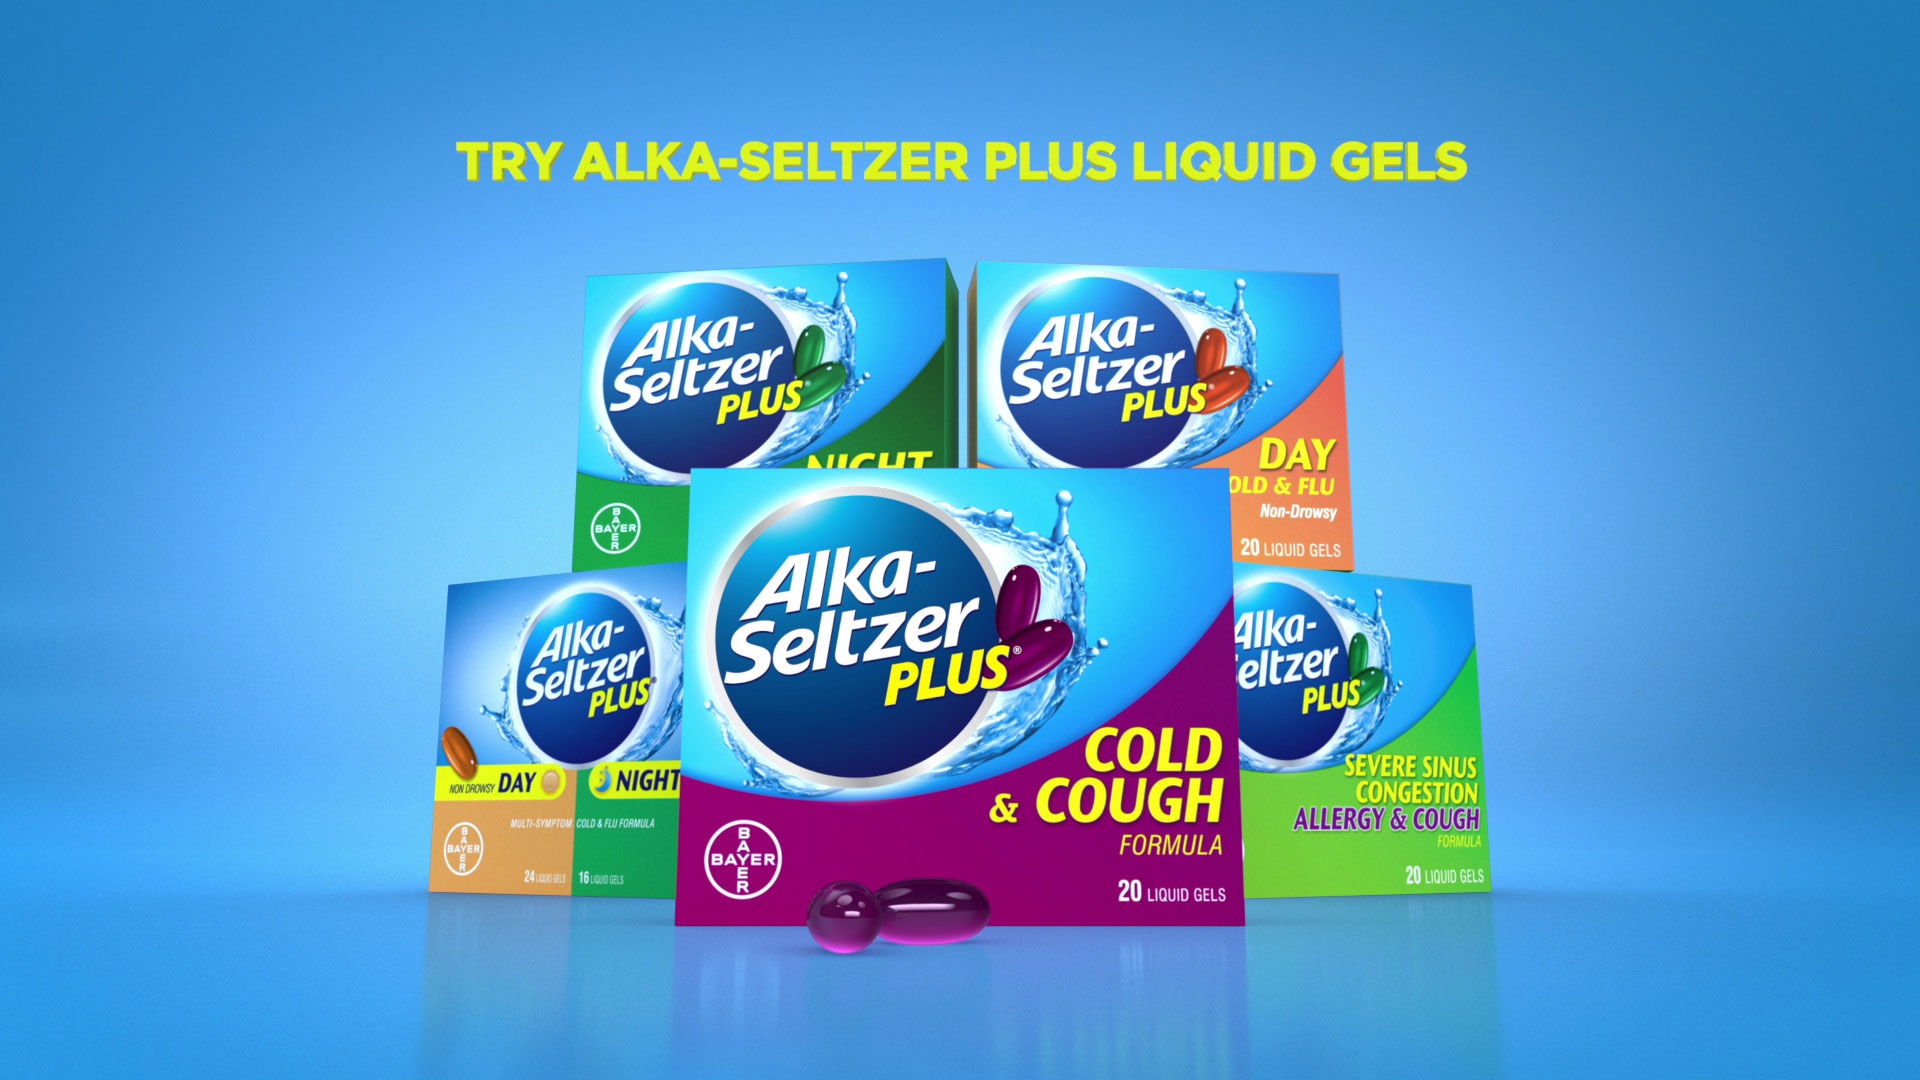 ASP more liquid gels